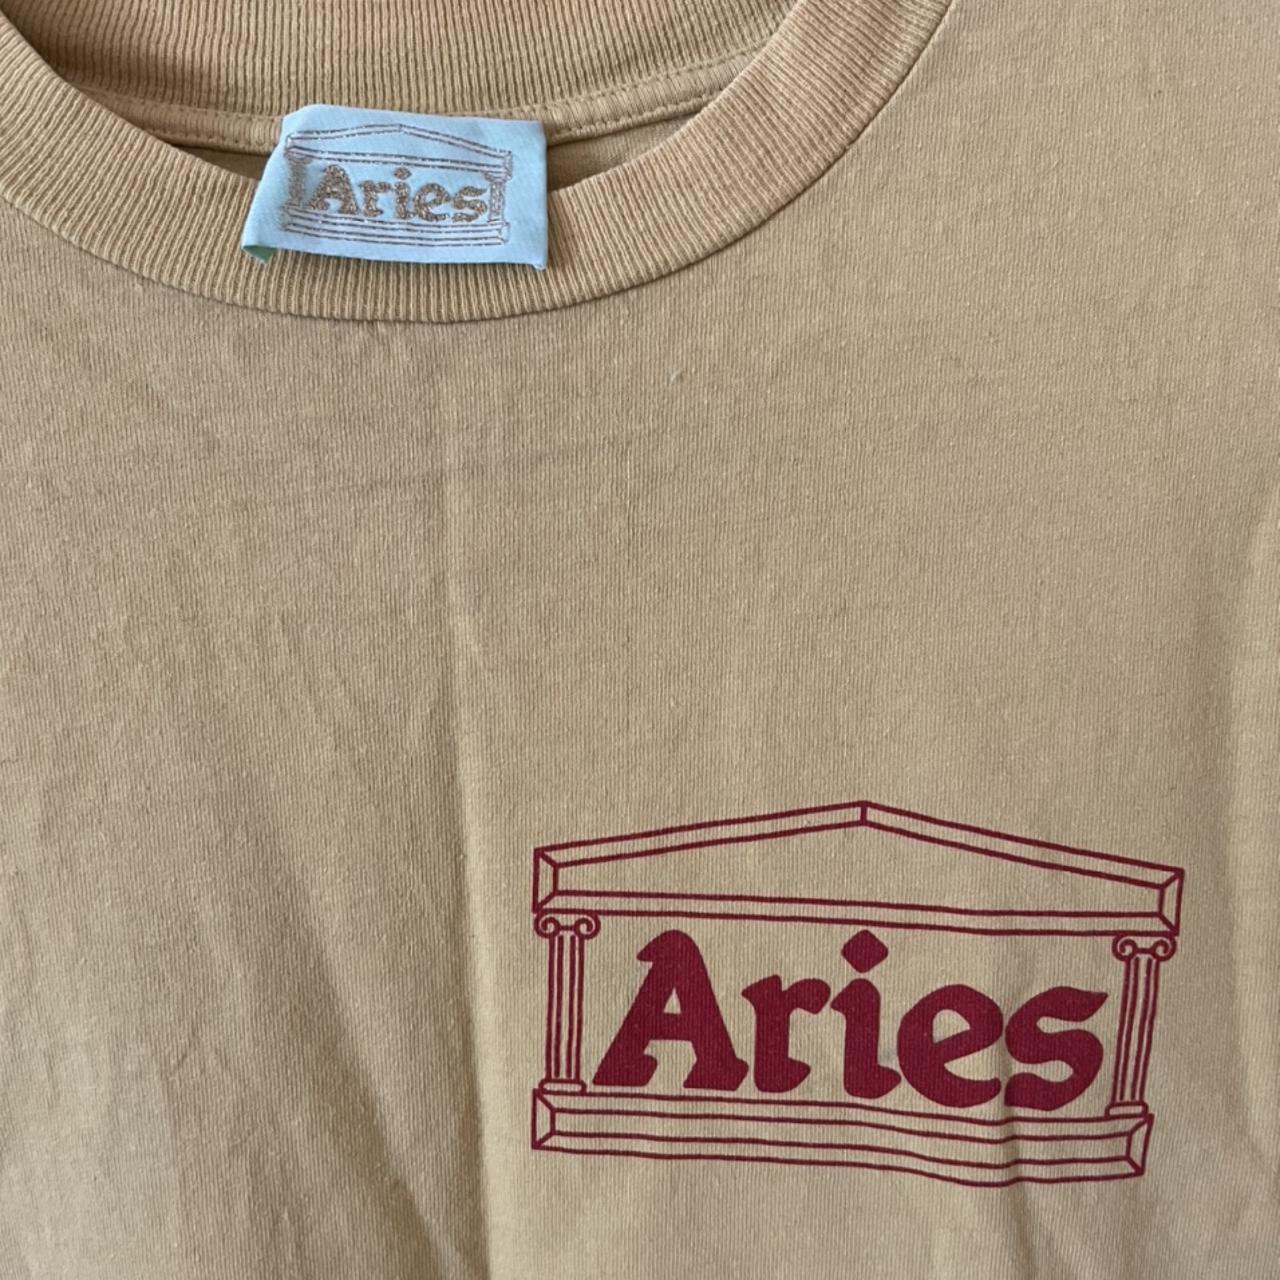 Aries Arise Women's Yellow and Red T-shirt (2)